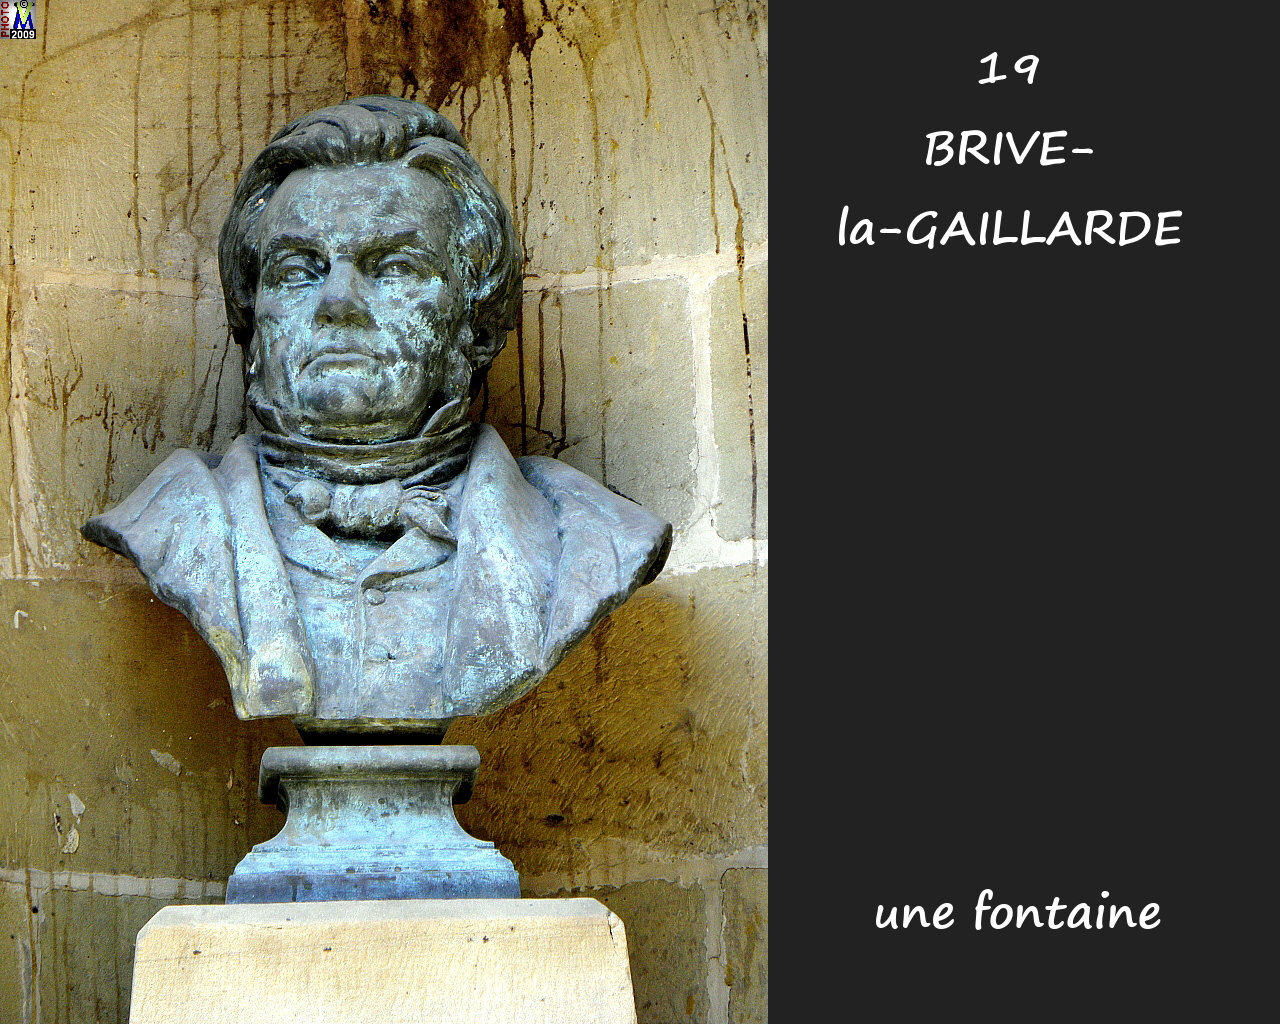 19BRIVE-GAILLARDE_fontaine_112.jpg